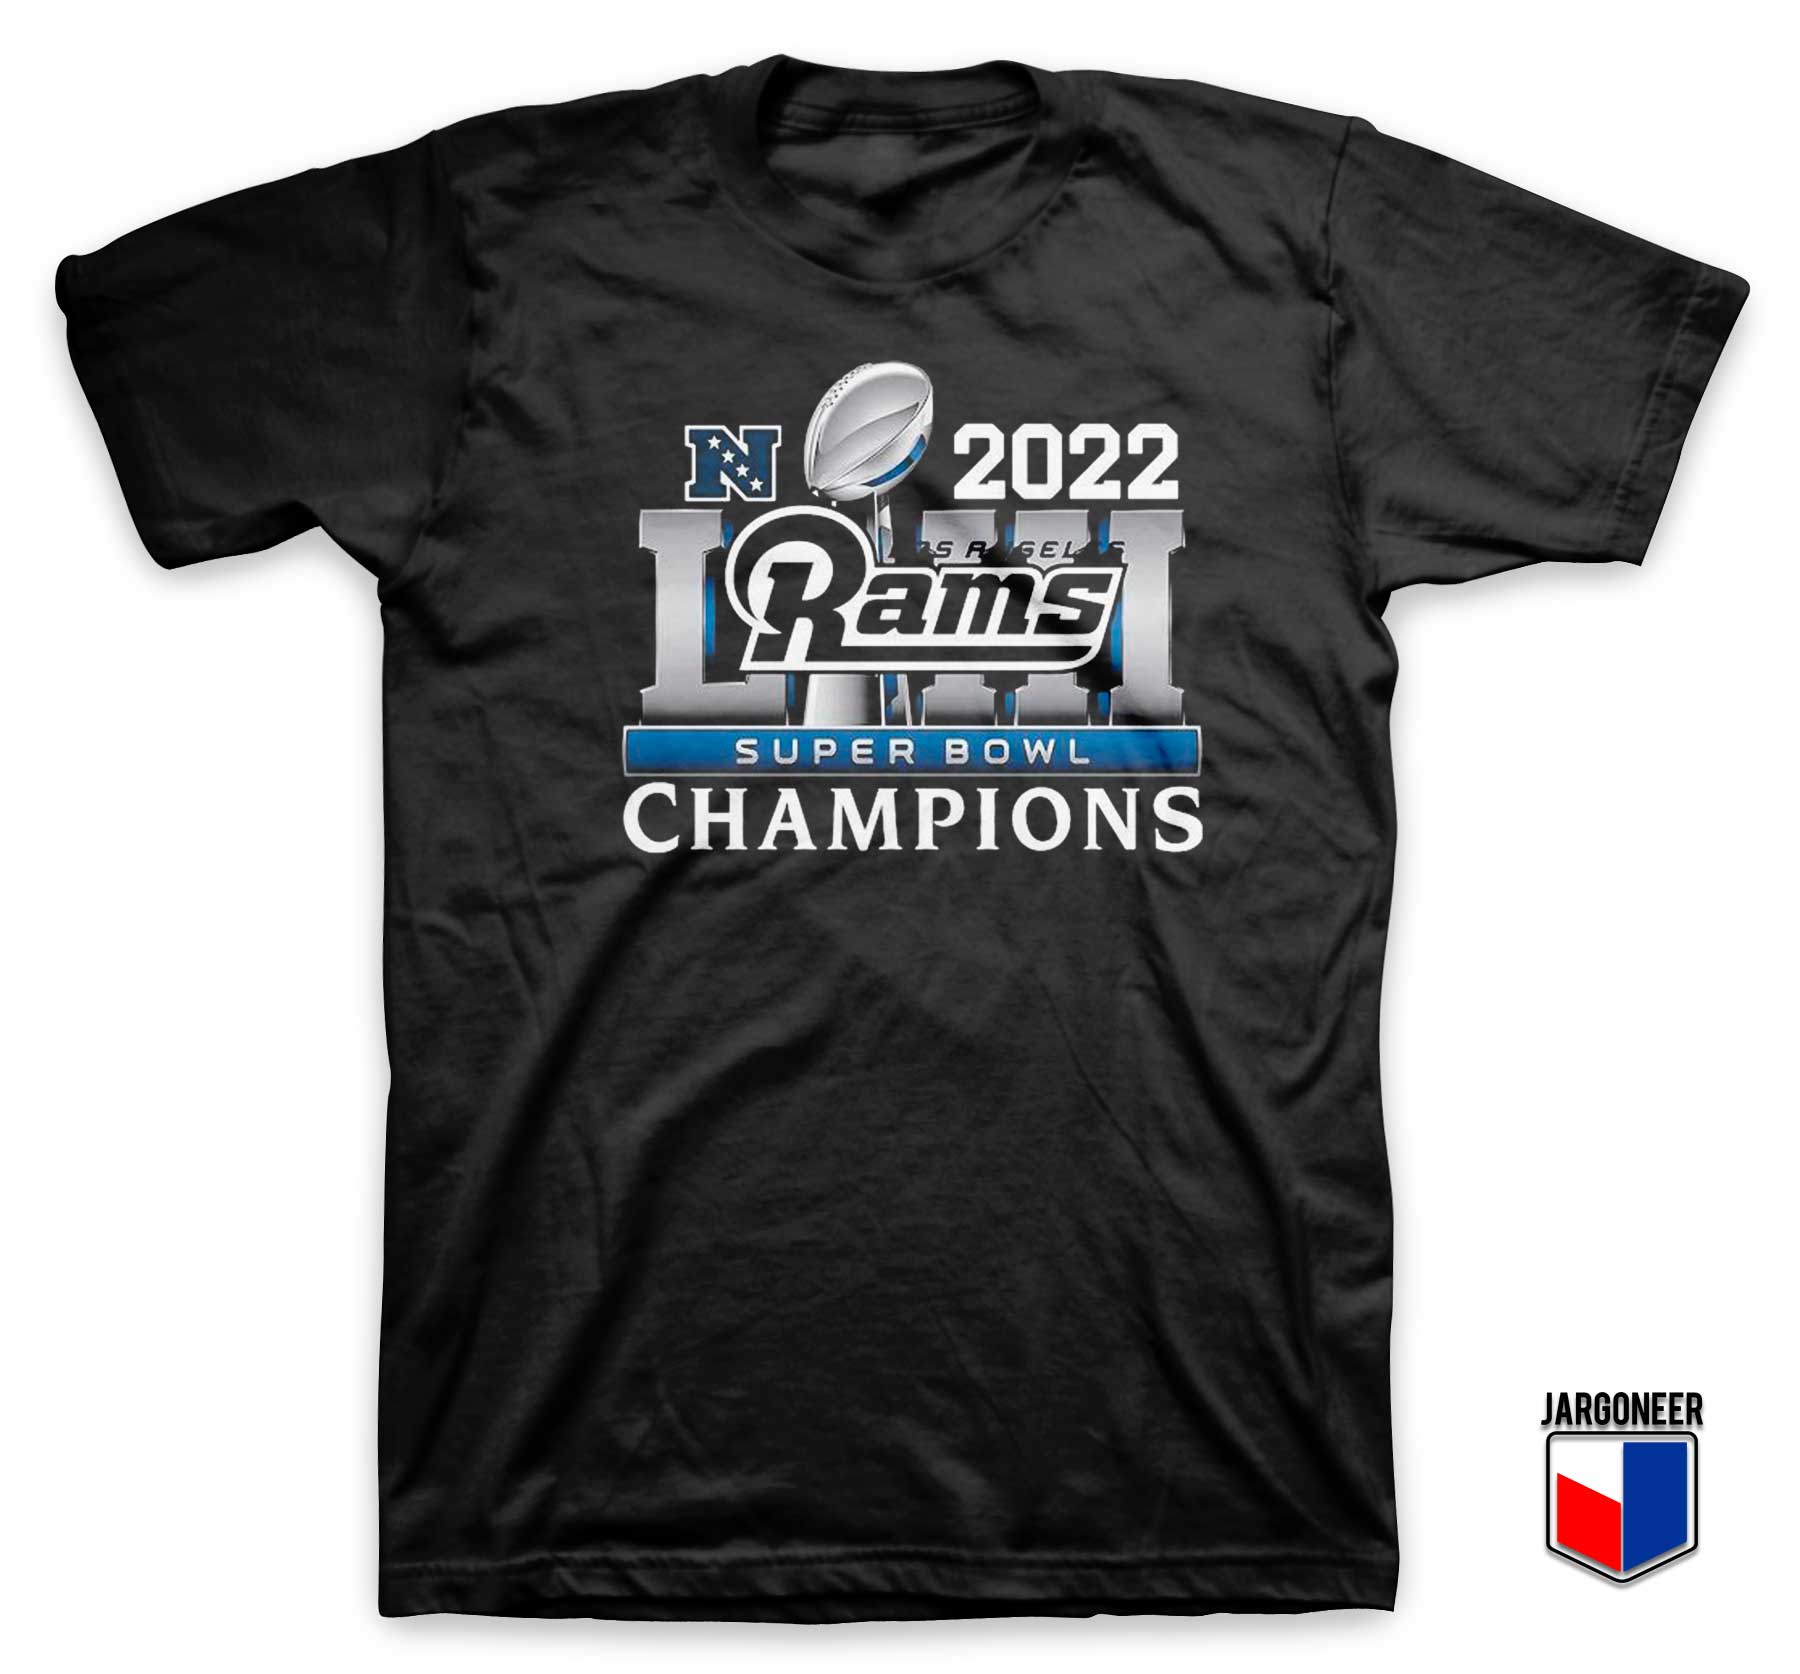 Los Angeles Rams Super Bowl Champions 2022 T Shirt - Shop Unique Graphic Cool Shirt Designs